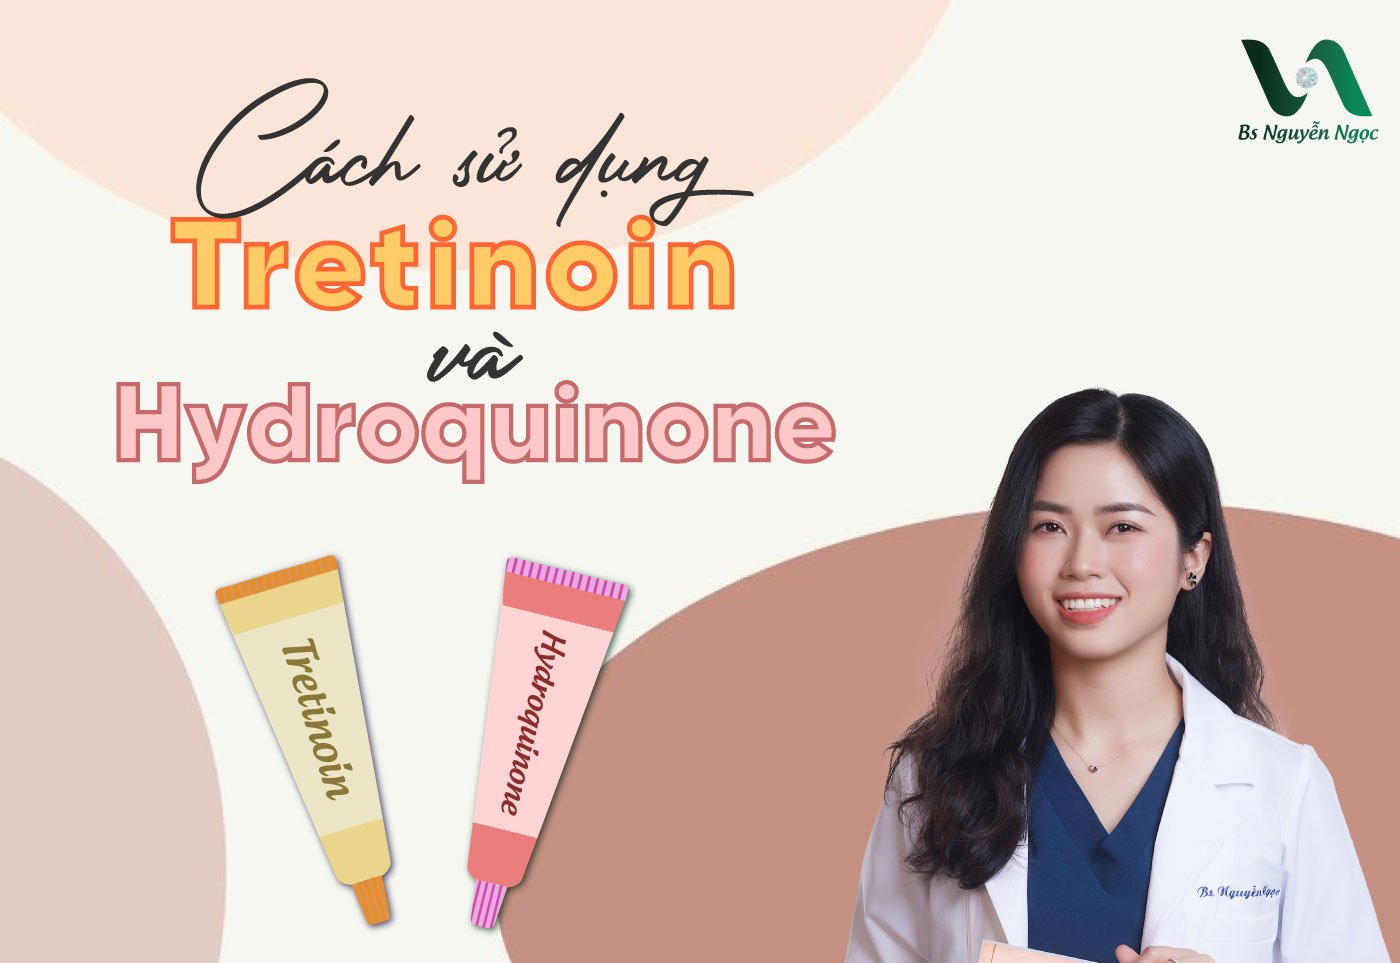 Cách sử dụng Tretinoin và Hydroquinone đúng cách